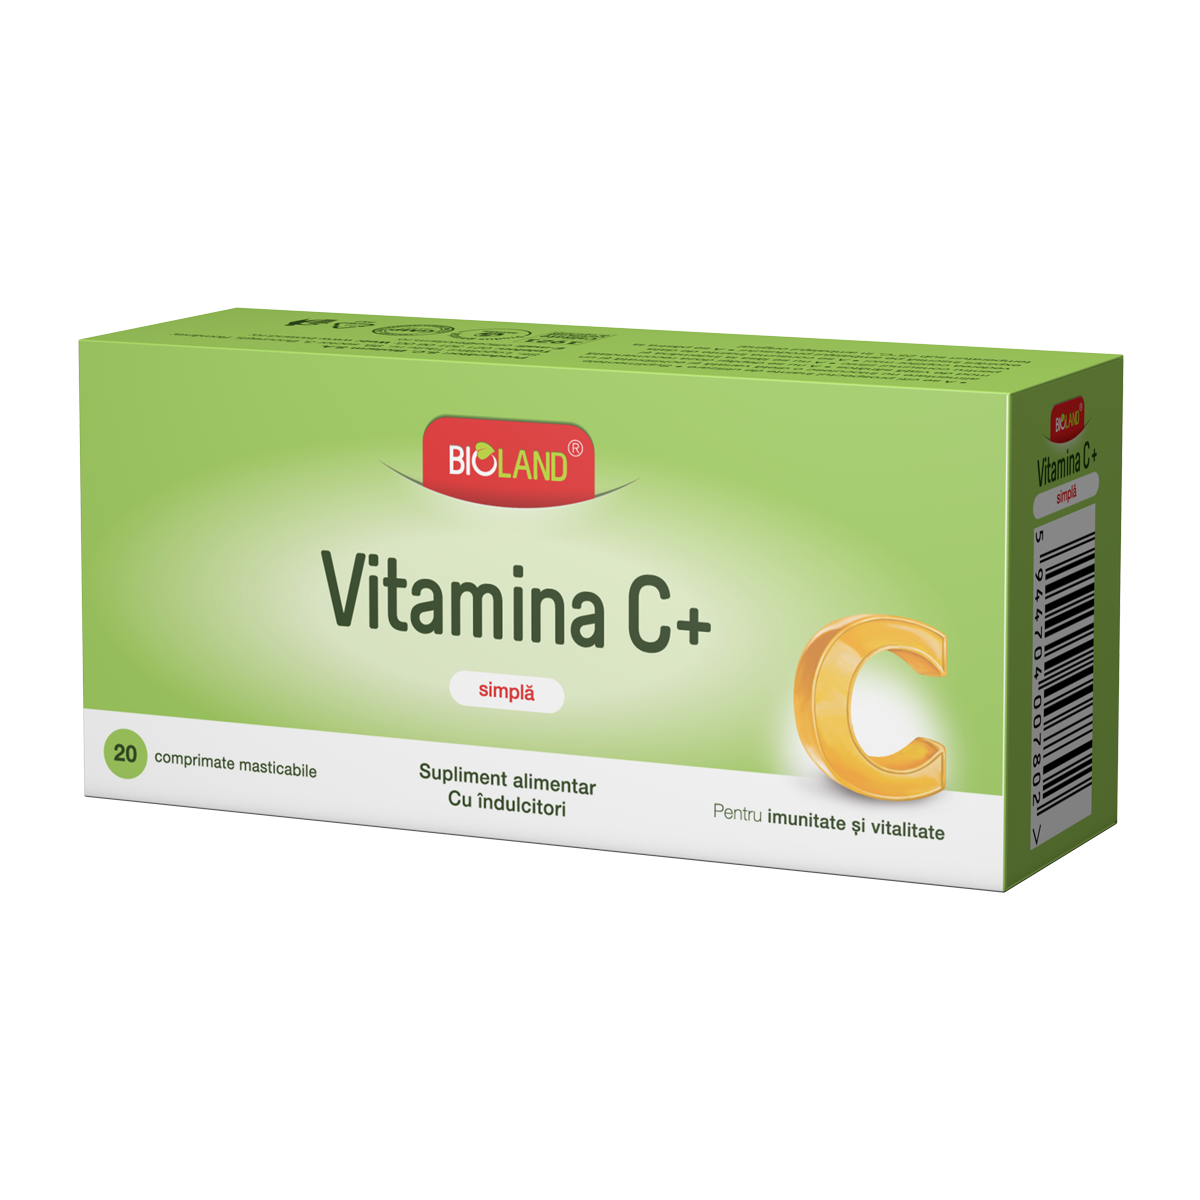 IMUNOMODULATOARE - Bioland Vitamina C + simplă, 20 comprimate, Biofarm, sinapis.ro